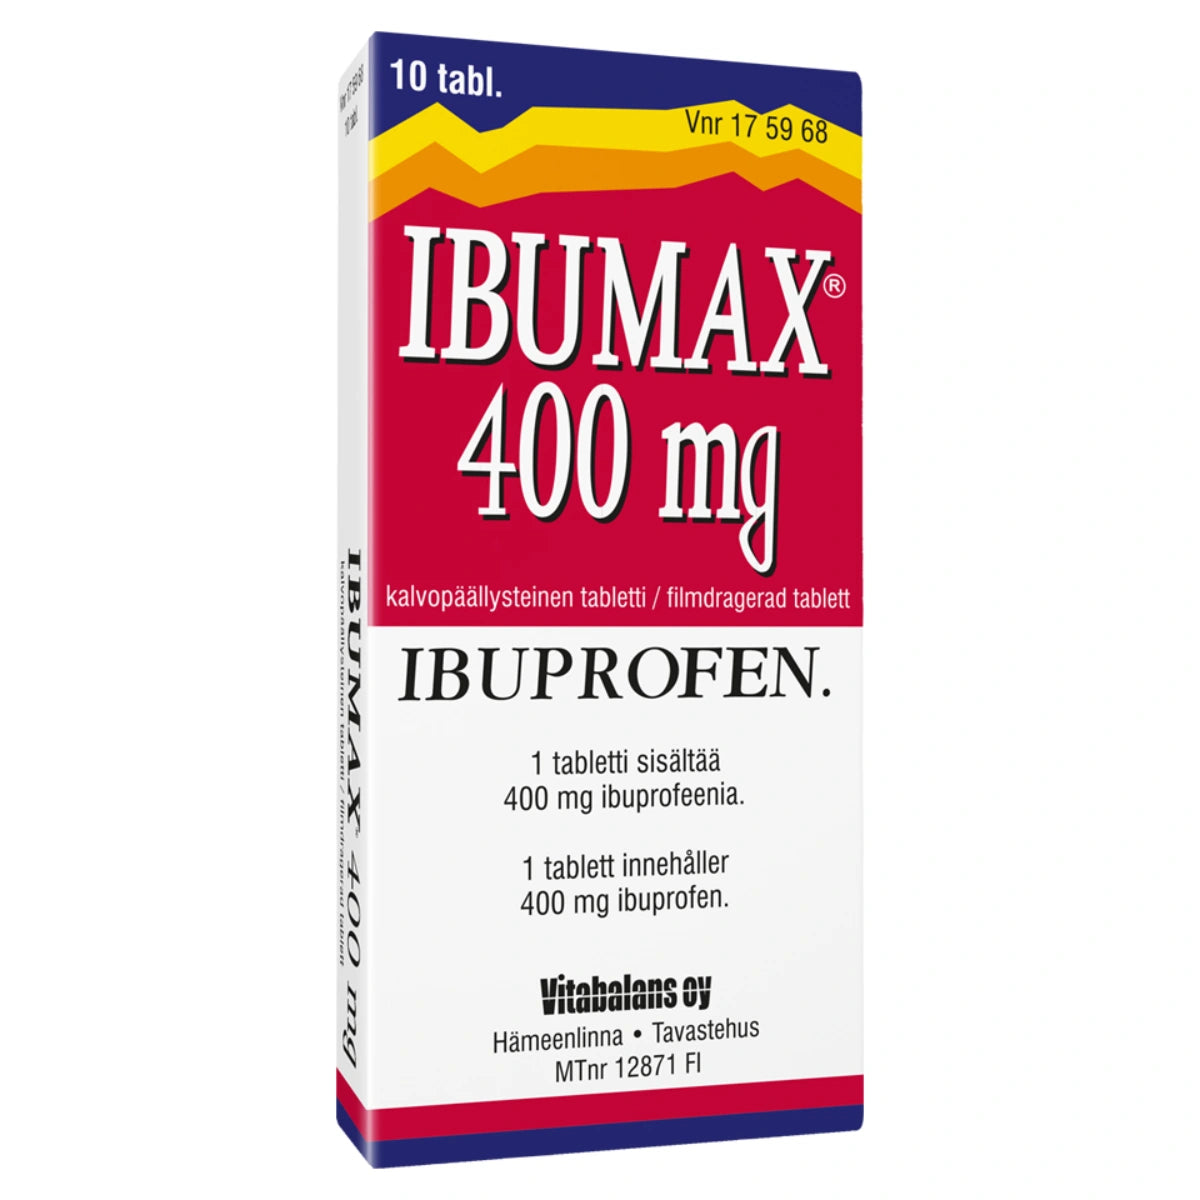 IBUMAX 400 mg tabletti, kalvopäällysteinen 10 kpl